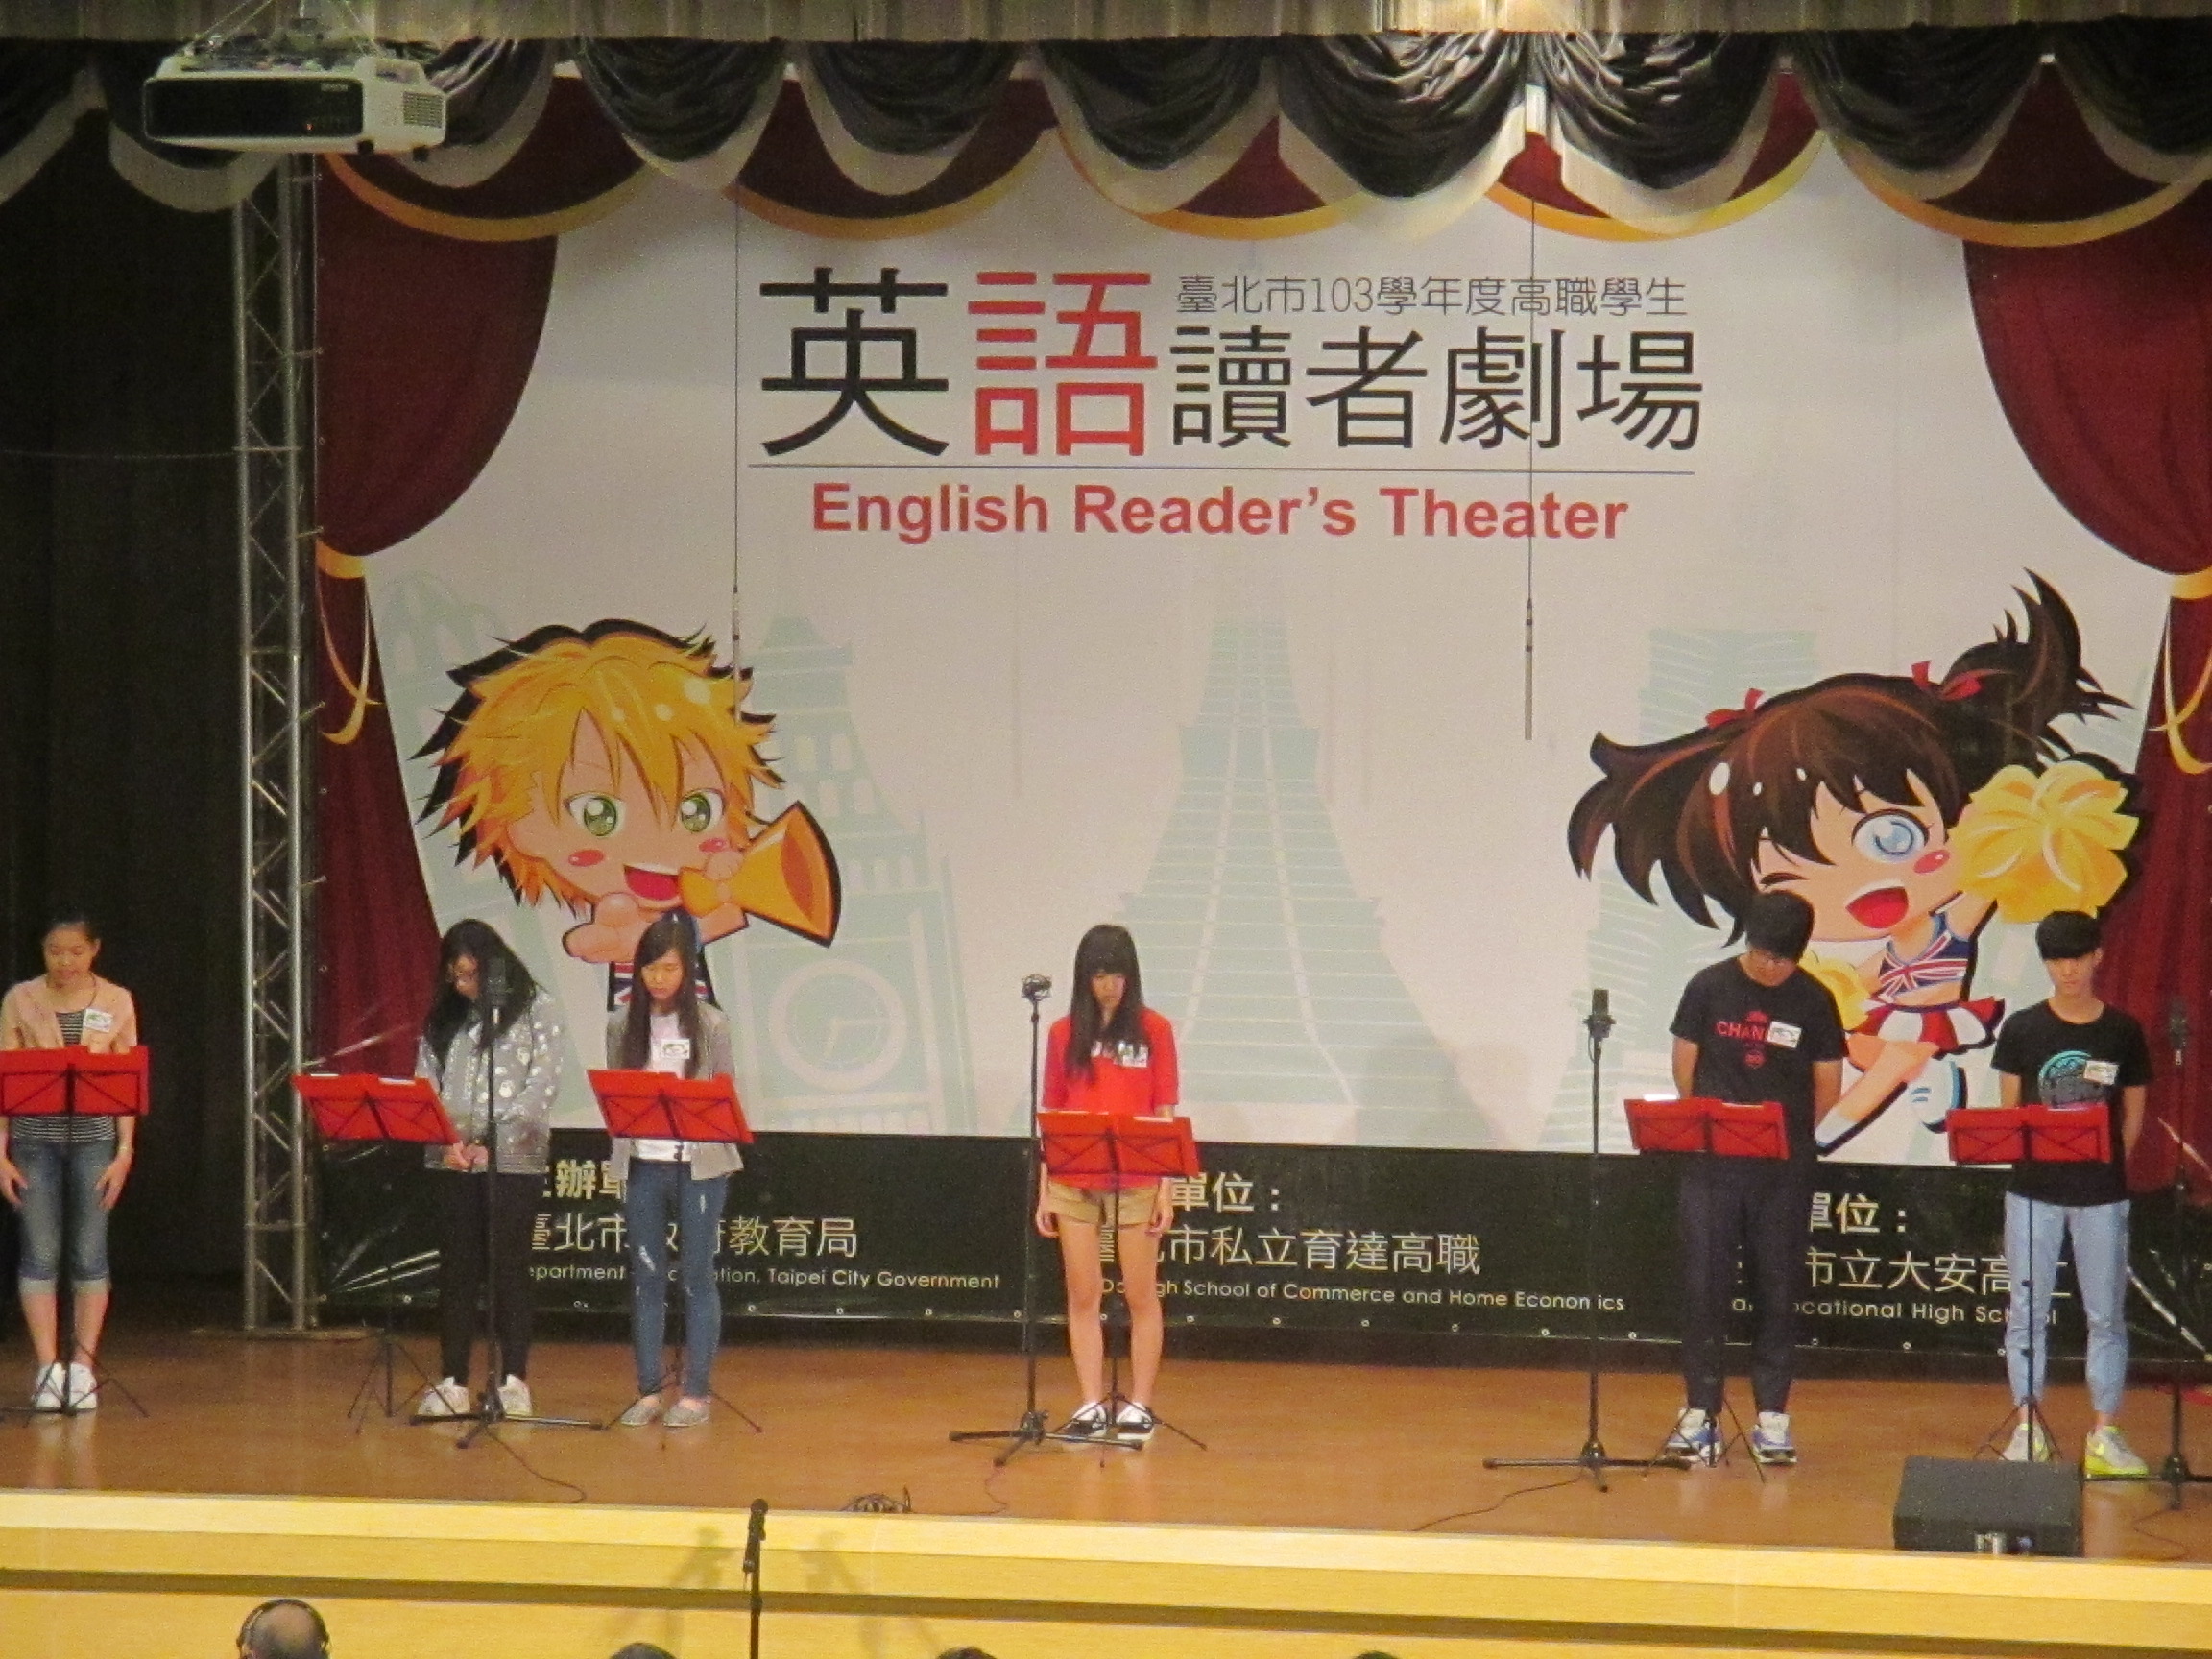 臺北市103學年度高職學生英語讀者劇場比賽